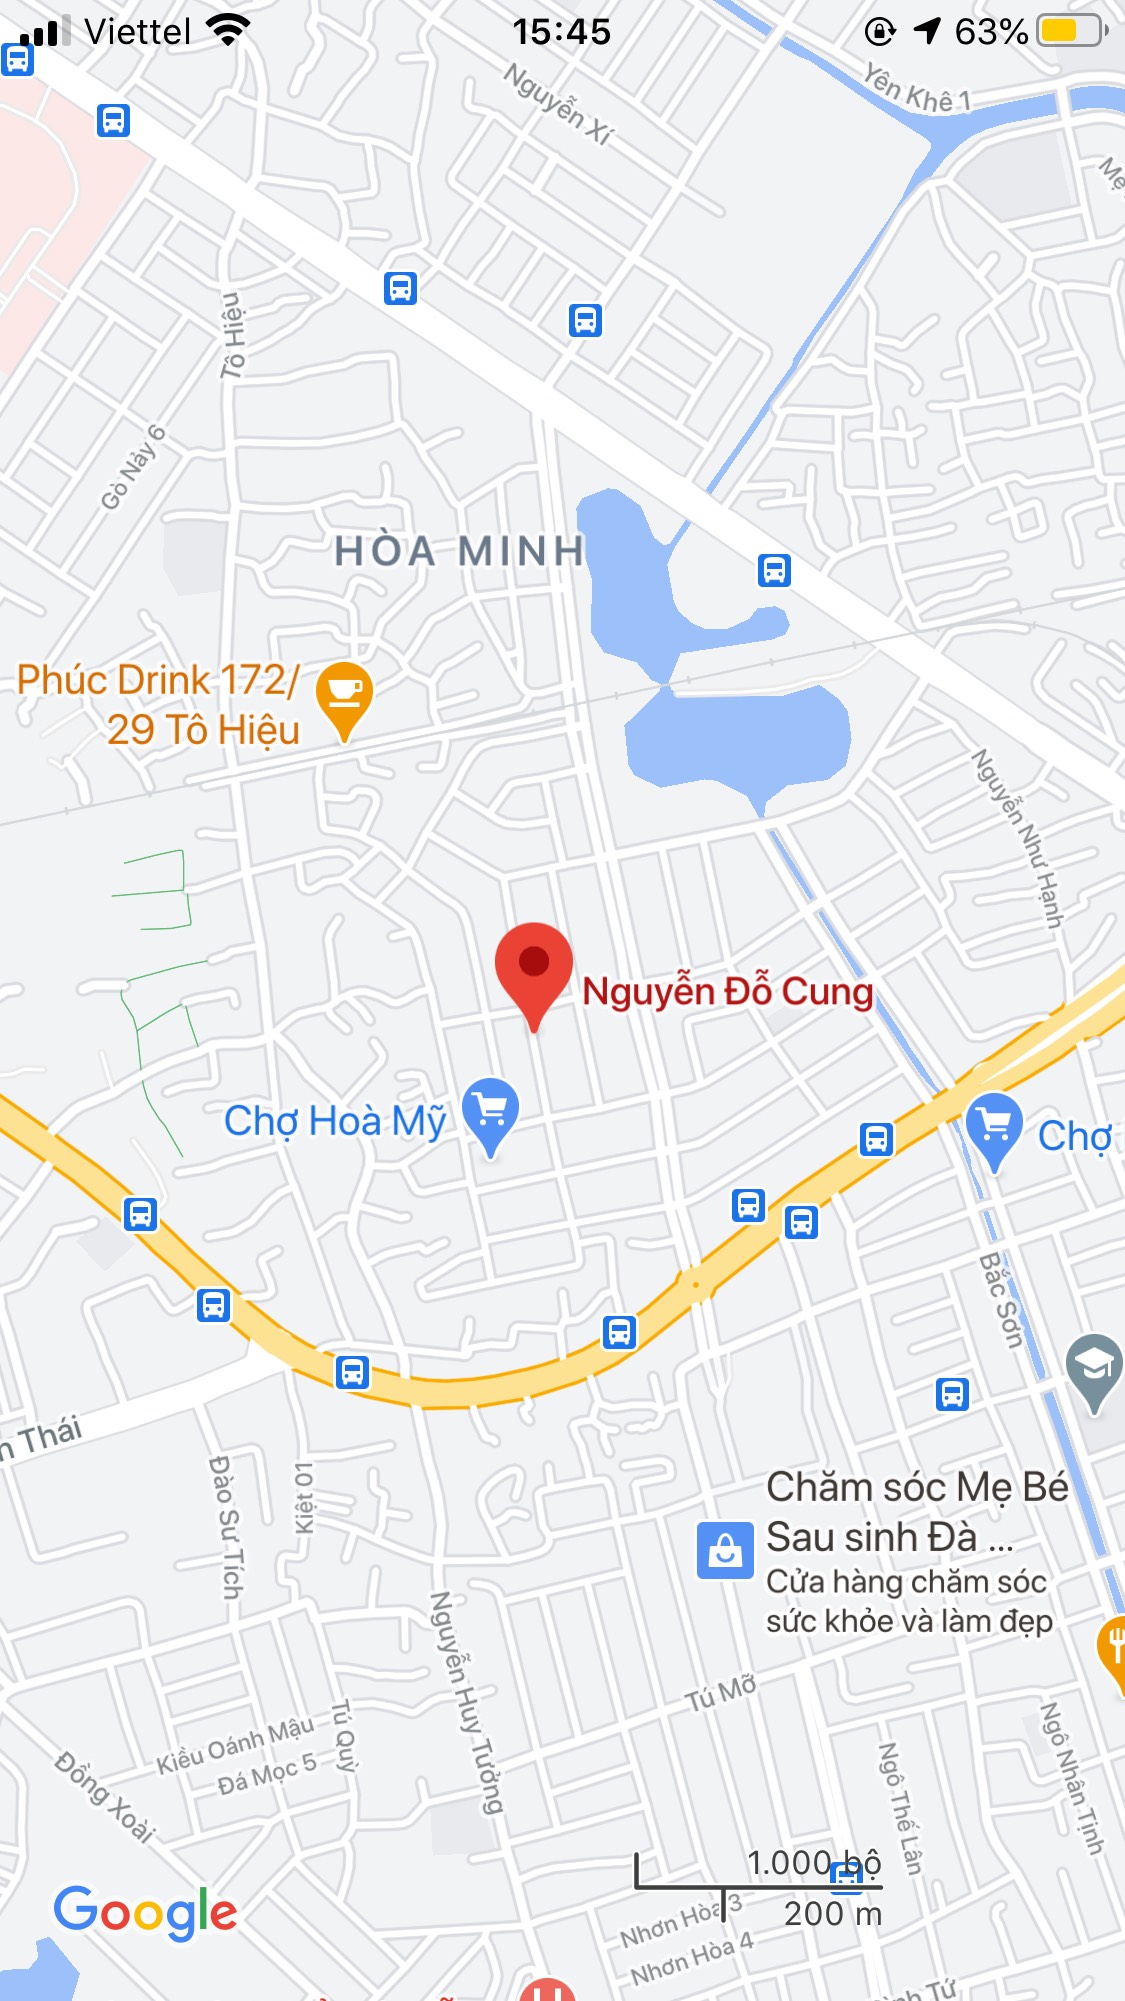 Cần bán nhà mặt tiền đường Nguyễn Đỗ Cung, quận Liên Chiểu. DT: 154 m2, giá: 5,6 tỷ